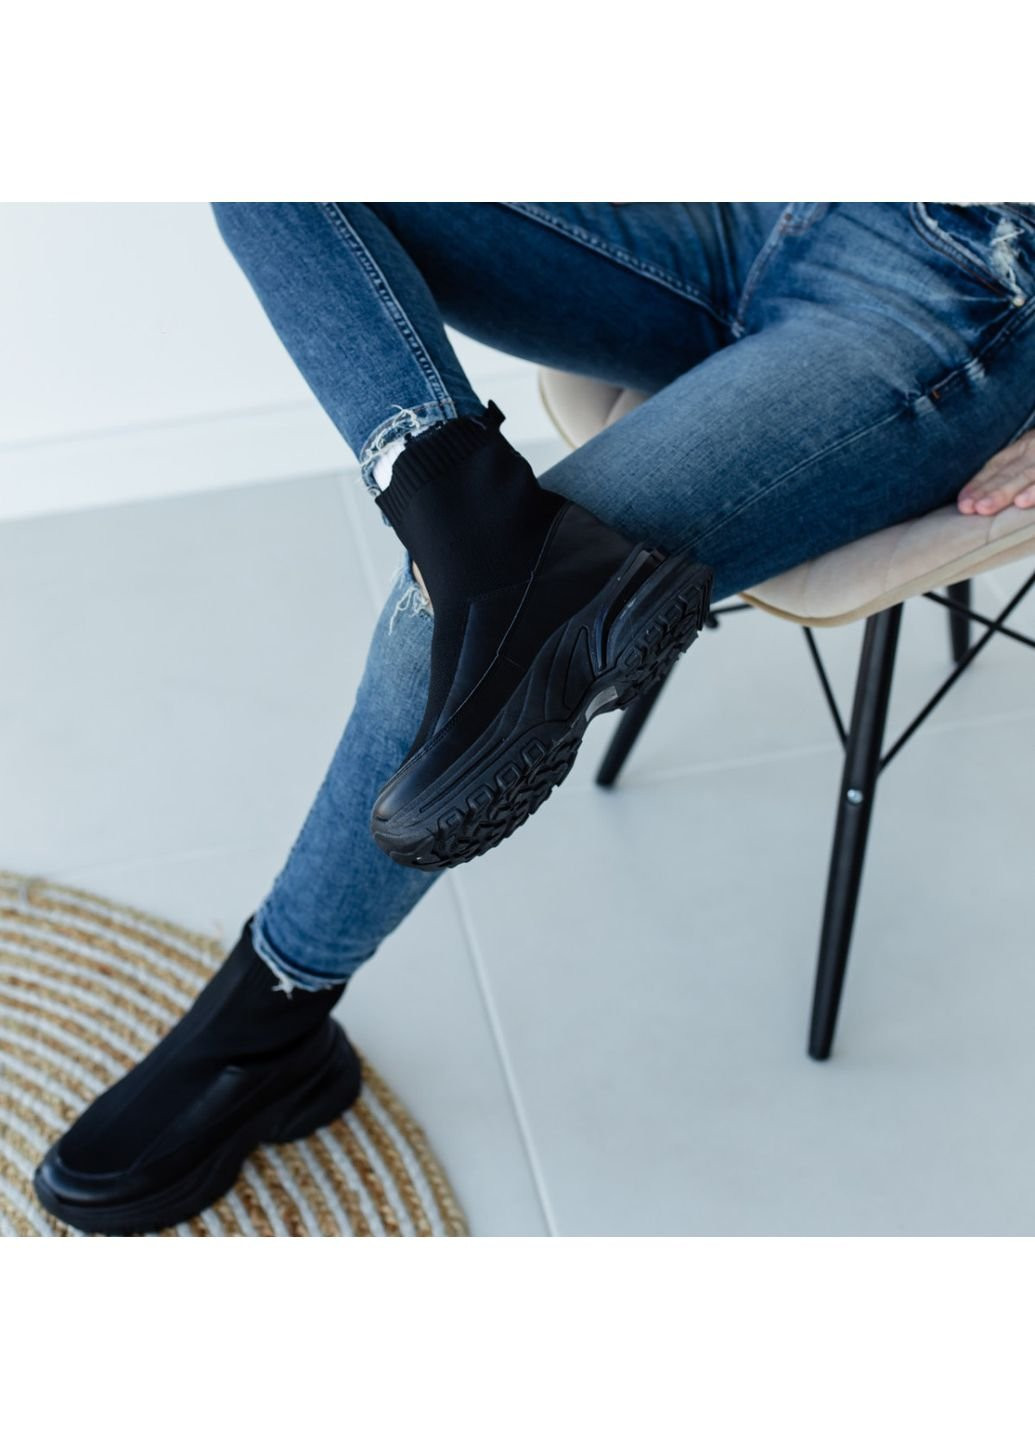 Осенние ботинки женские maple 3319 41 26 см черный Fashion из искусственной кожи